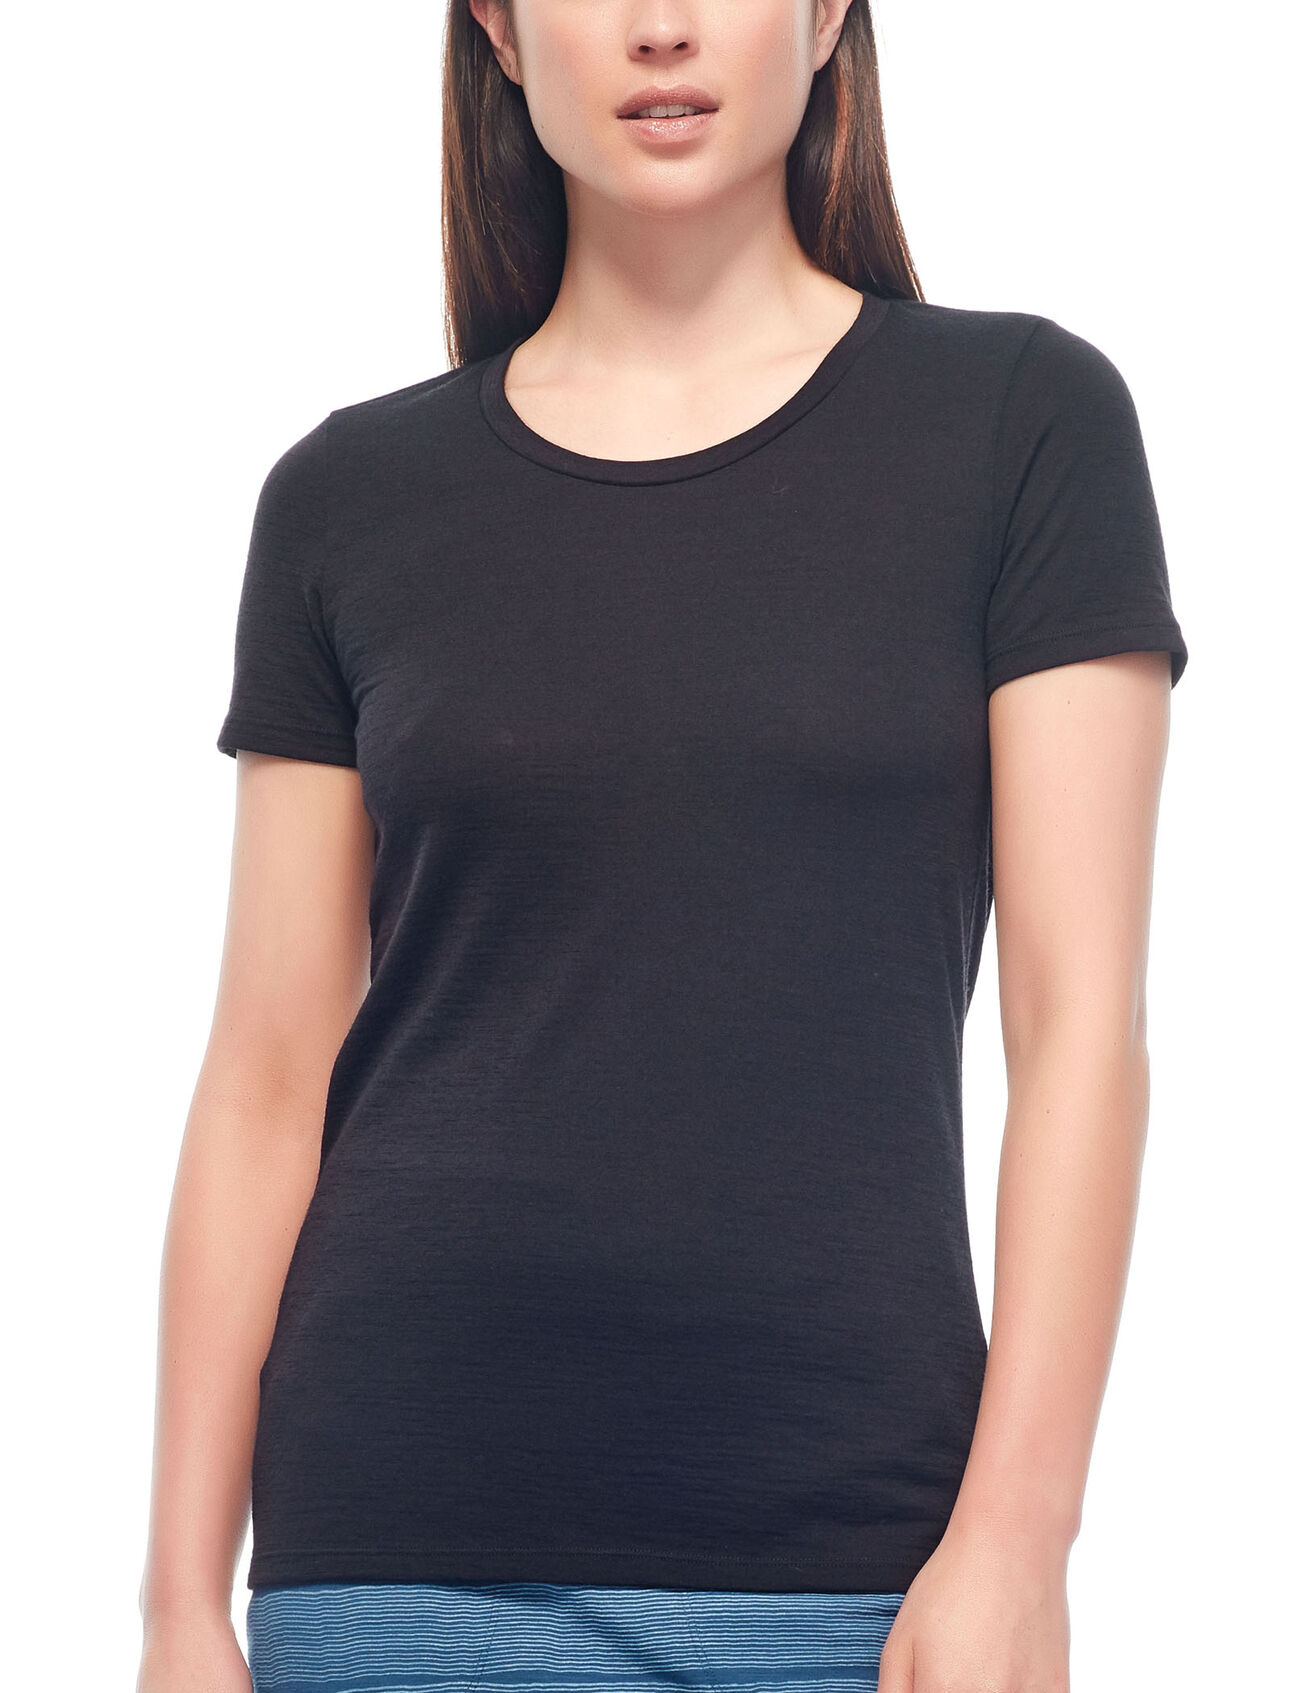 Merino Tech Lite Short Sleeve Low Crewe T-Shirt